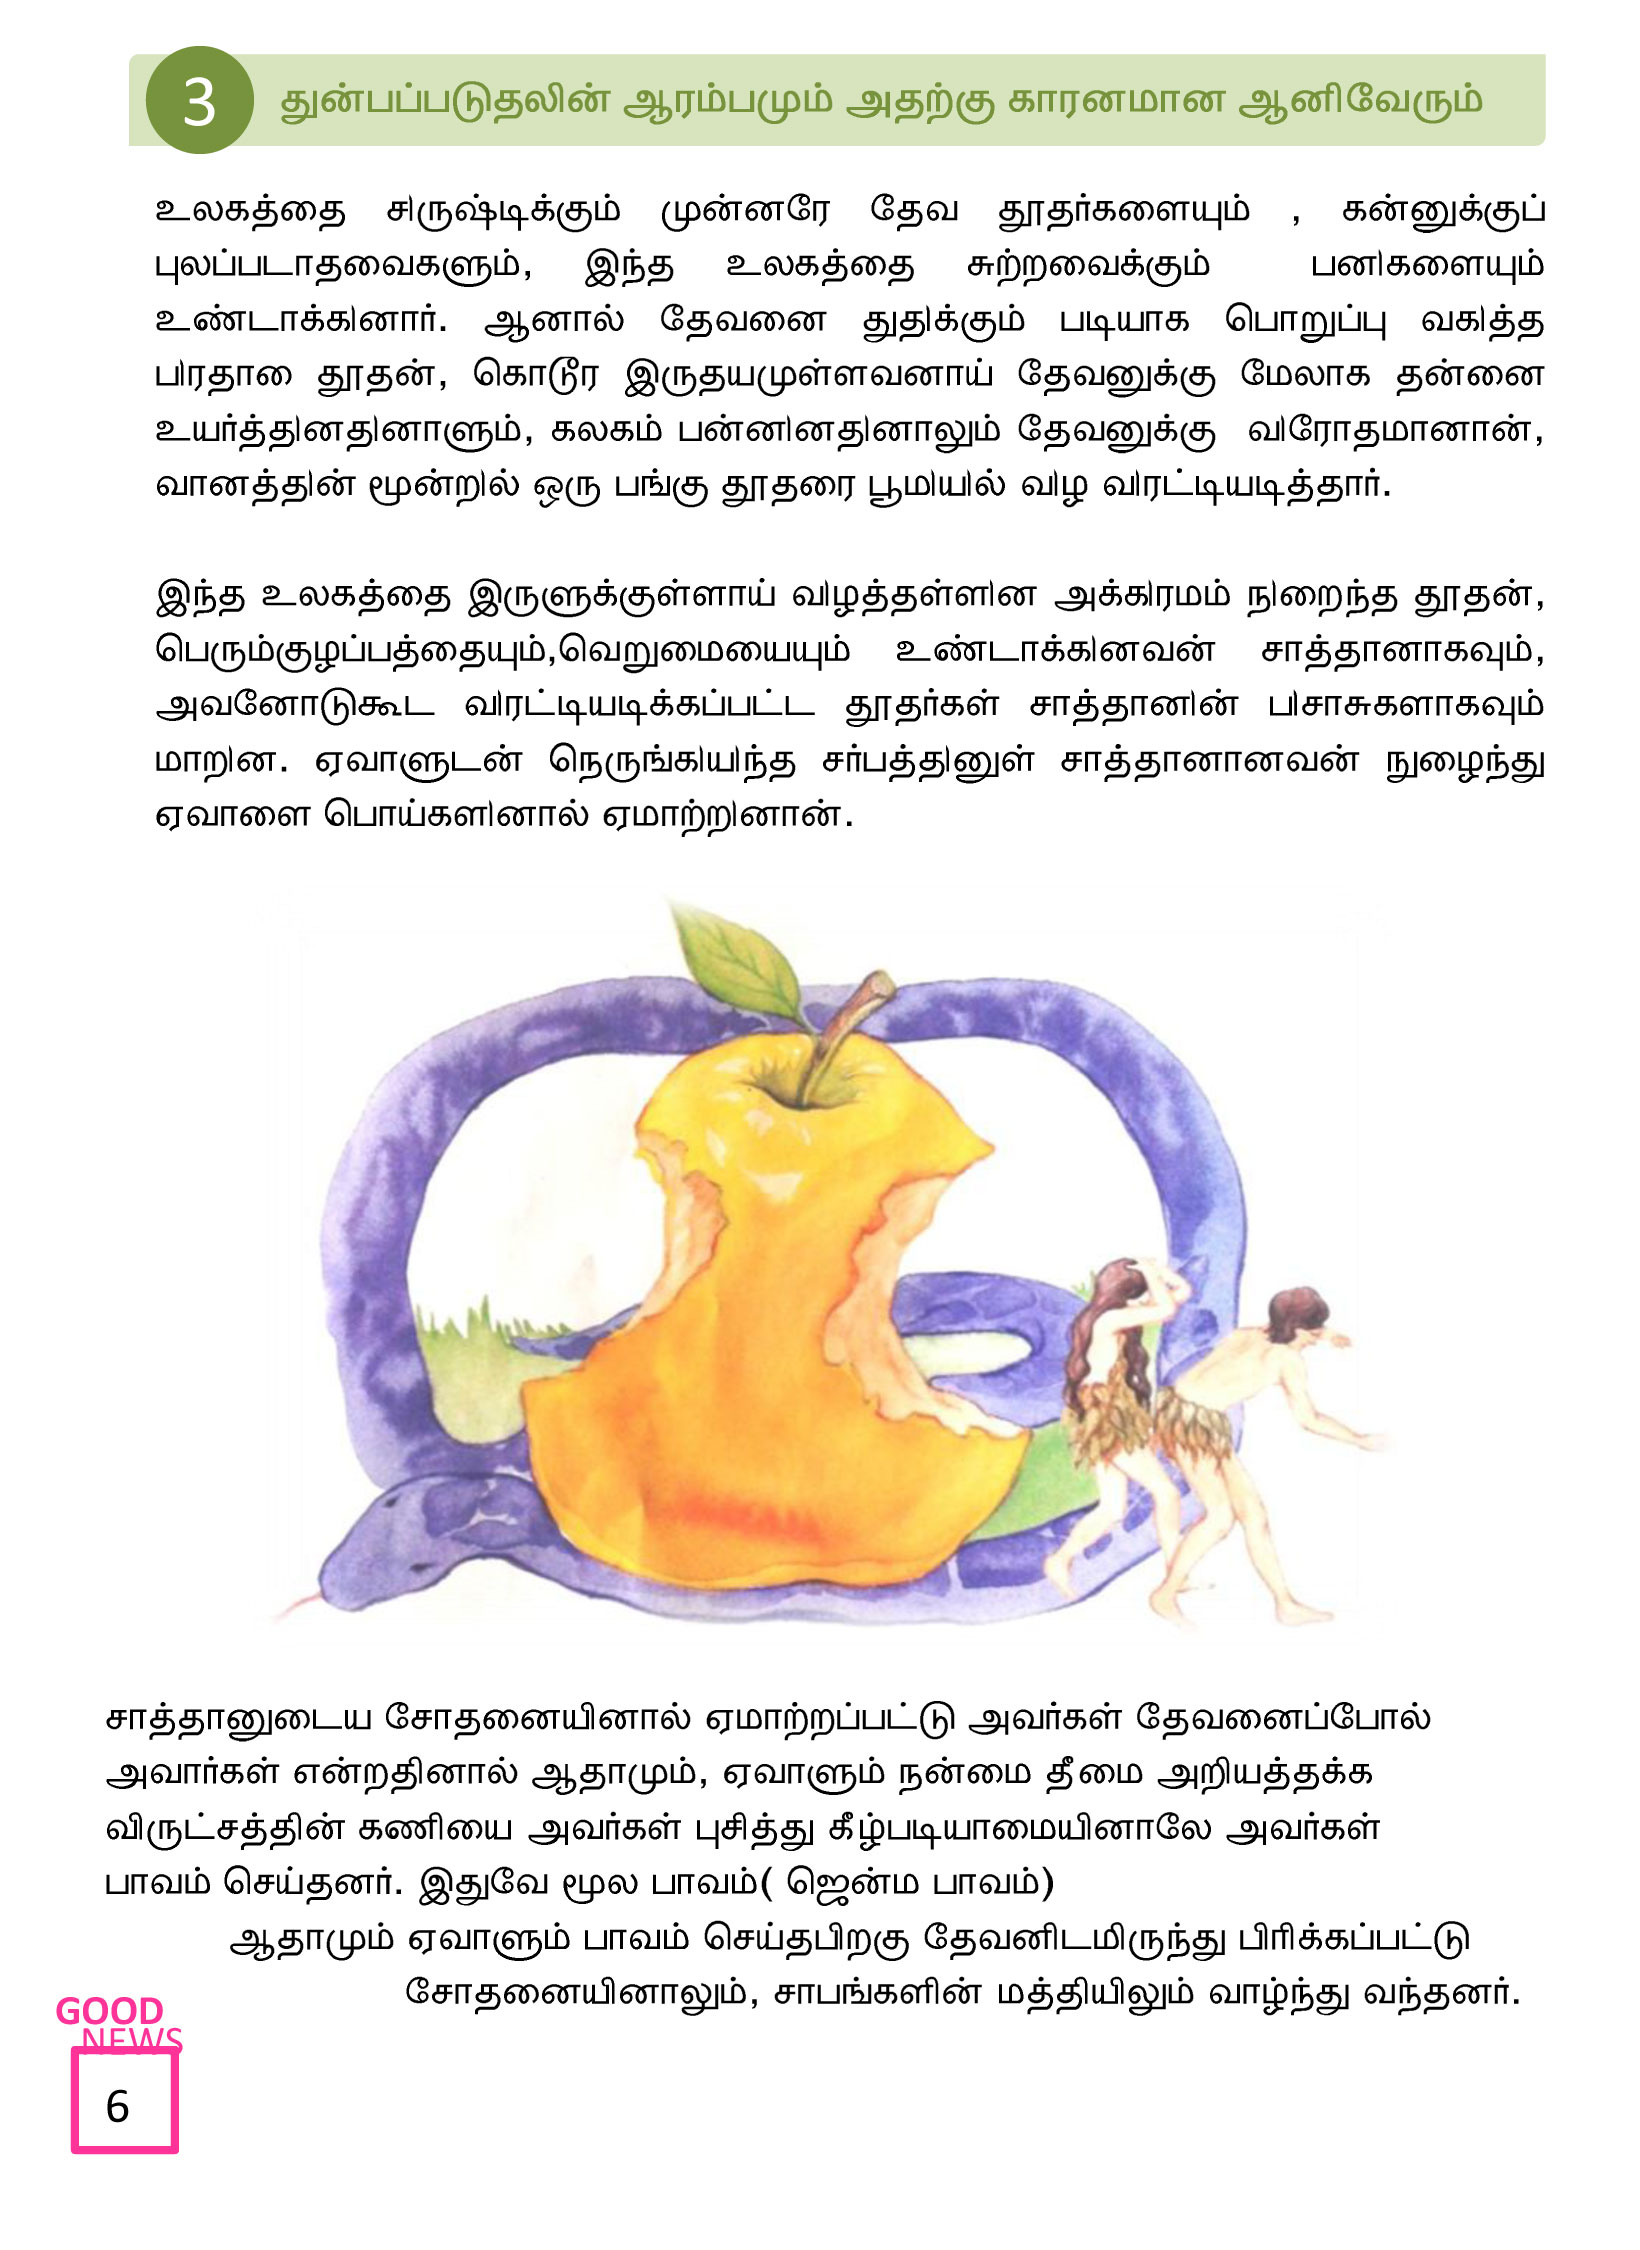 Tamil-Evangelism-Book-Pdf-3-06.jpg